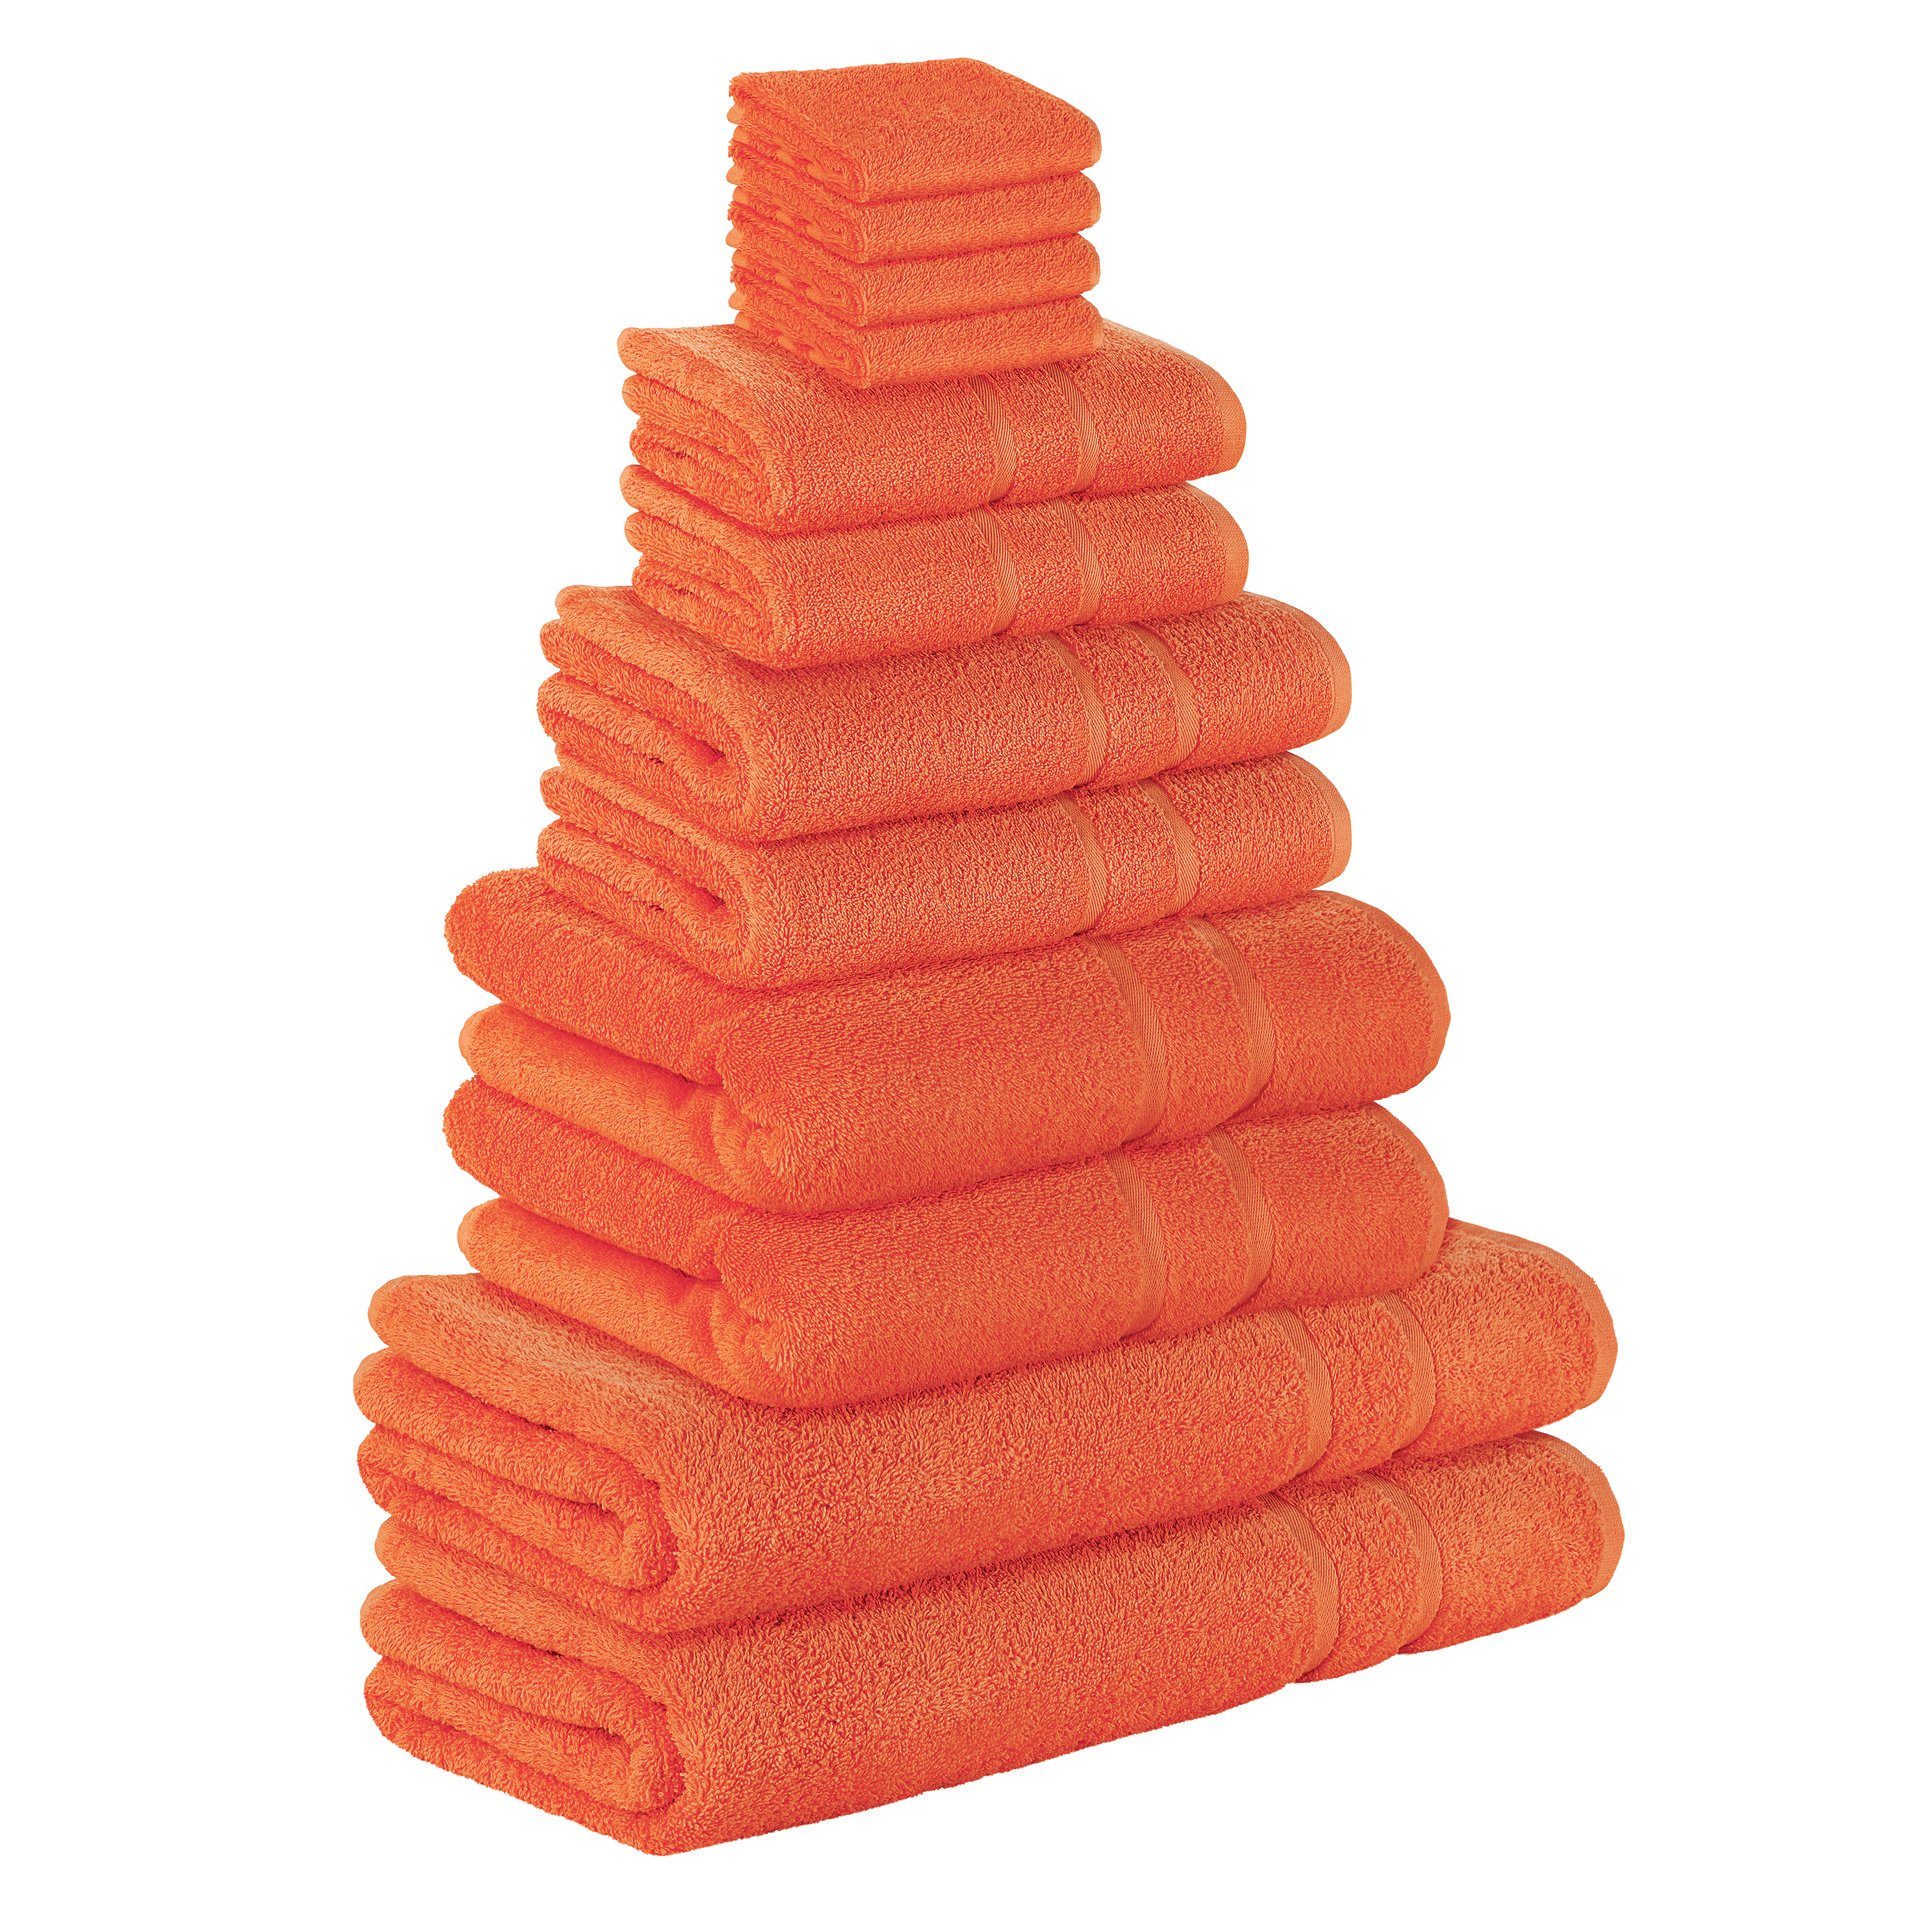 StickandShine Handtuch Set 4x Gästehandtuch 2x Handtücher 2x Duschtücher 2x Badetücher 2x Saunatücher als SET in verschiedenen Farben (12 Teilig) 100% Baumwolle 500 GSM Frottee 12er Handtuch Pack, 100% Baumwolle 500 GSM Orange